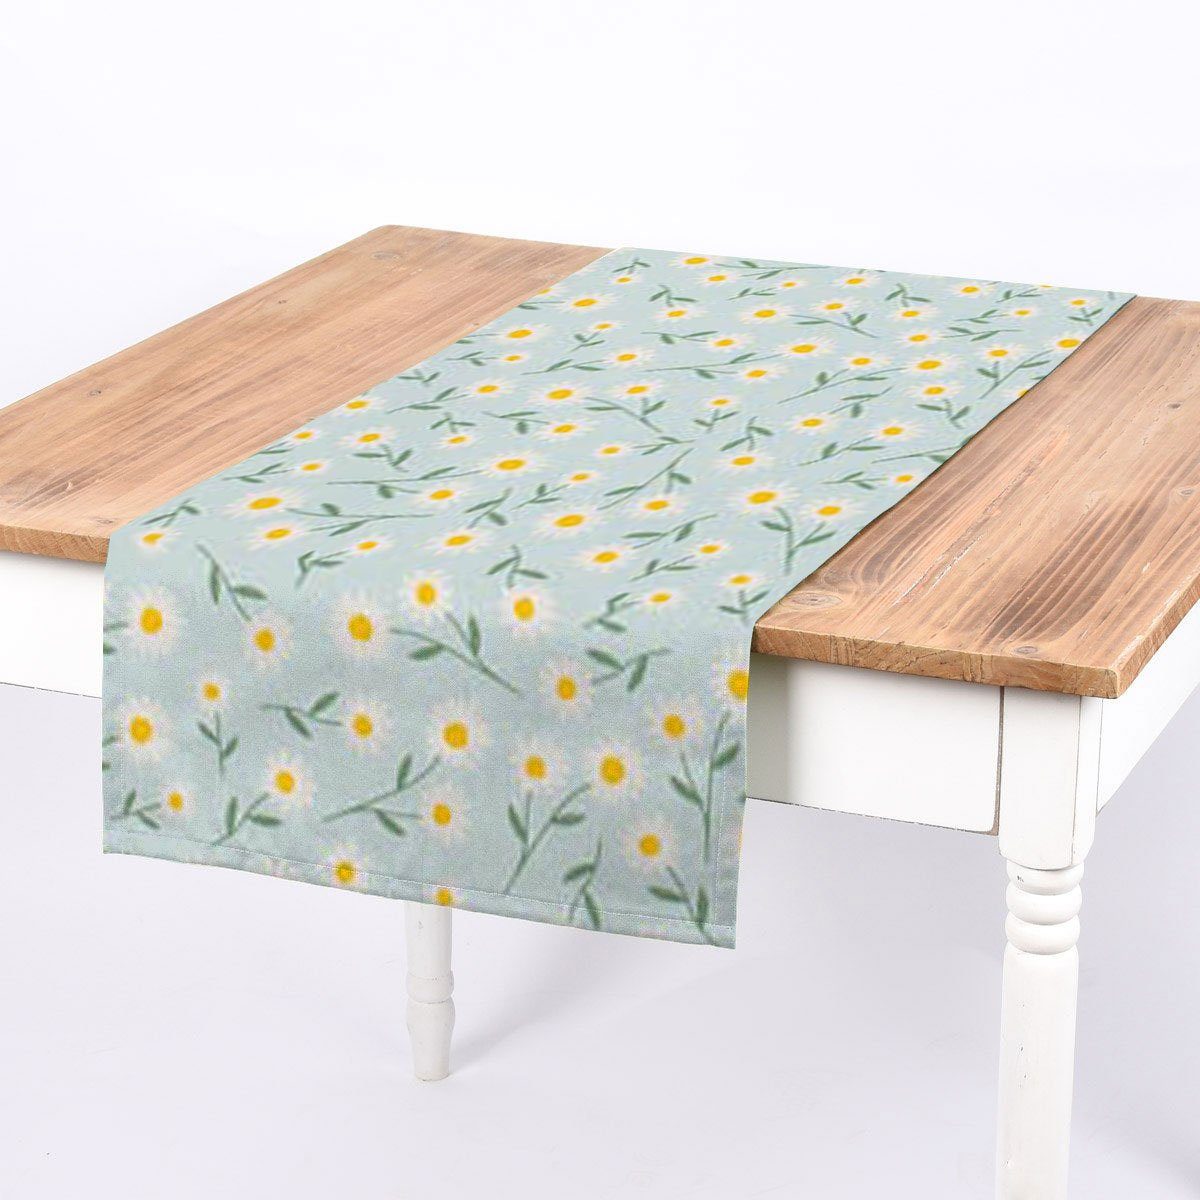 SCHÖNER LEBEN. Tischläufer weiß, Hintergrund hellblau hellblauer Gänseblümchen natur weiß-gelb-grünen Tischläufer Gänseblümchen LEBEN. mit oder SCHÖNER handmade